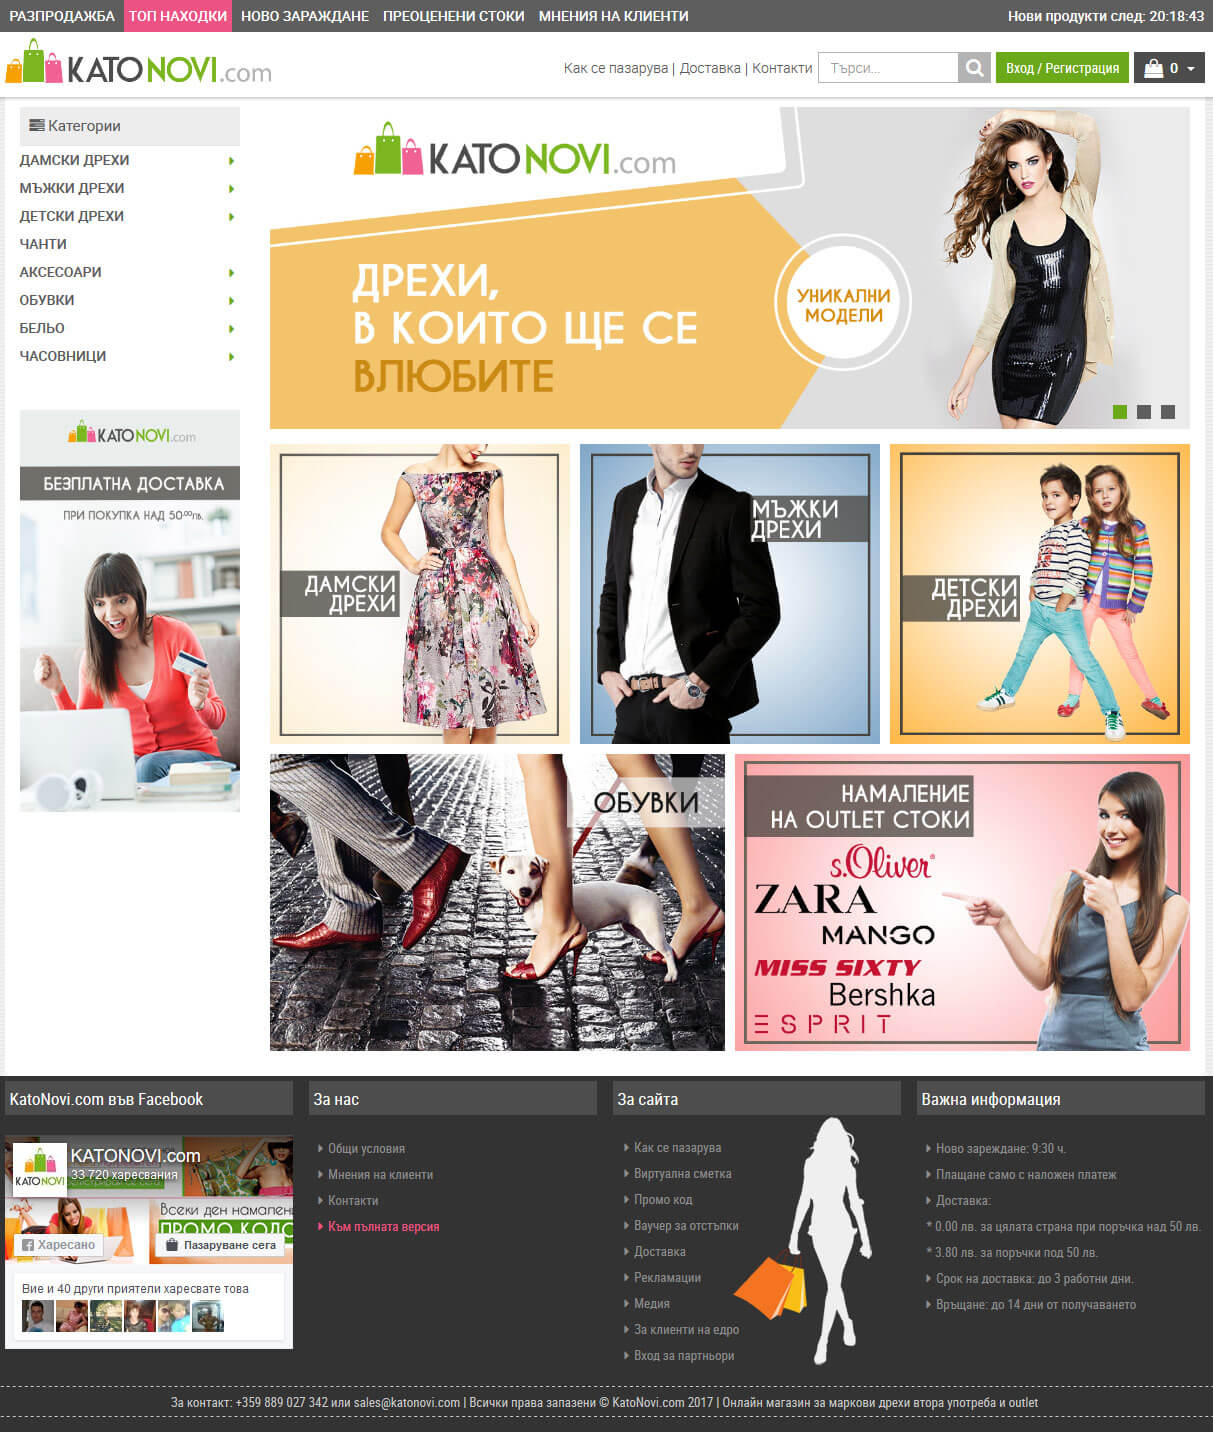 Online store - Katonovi